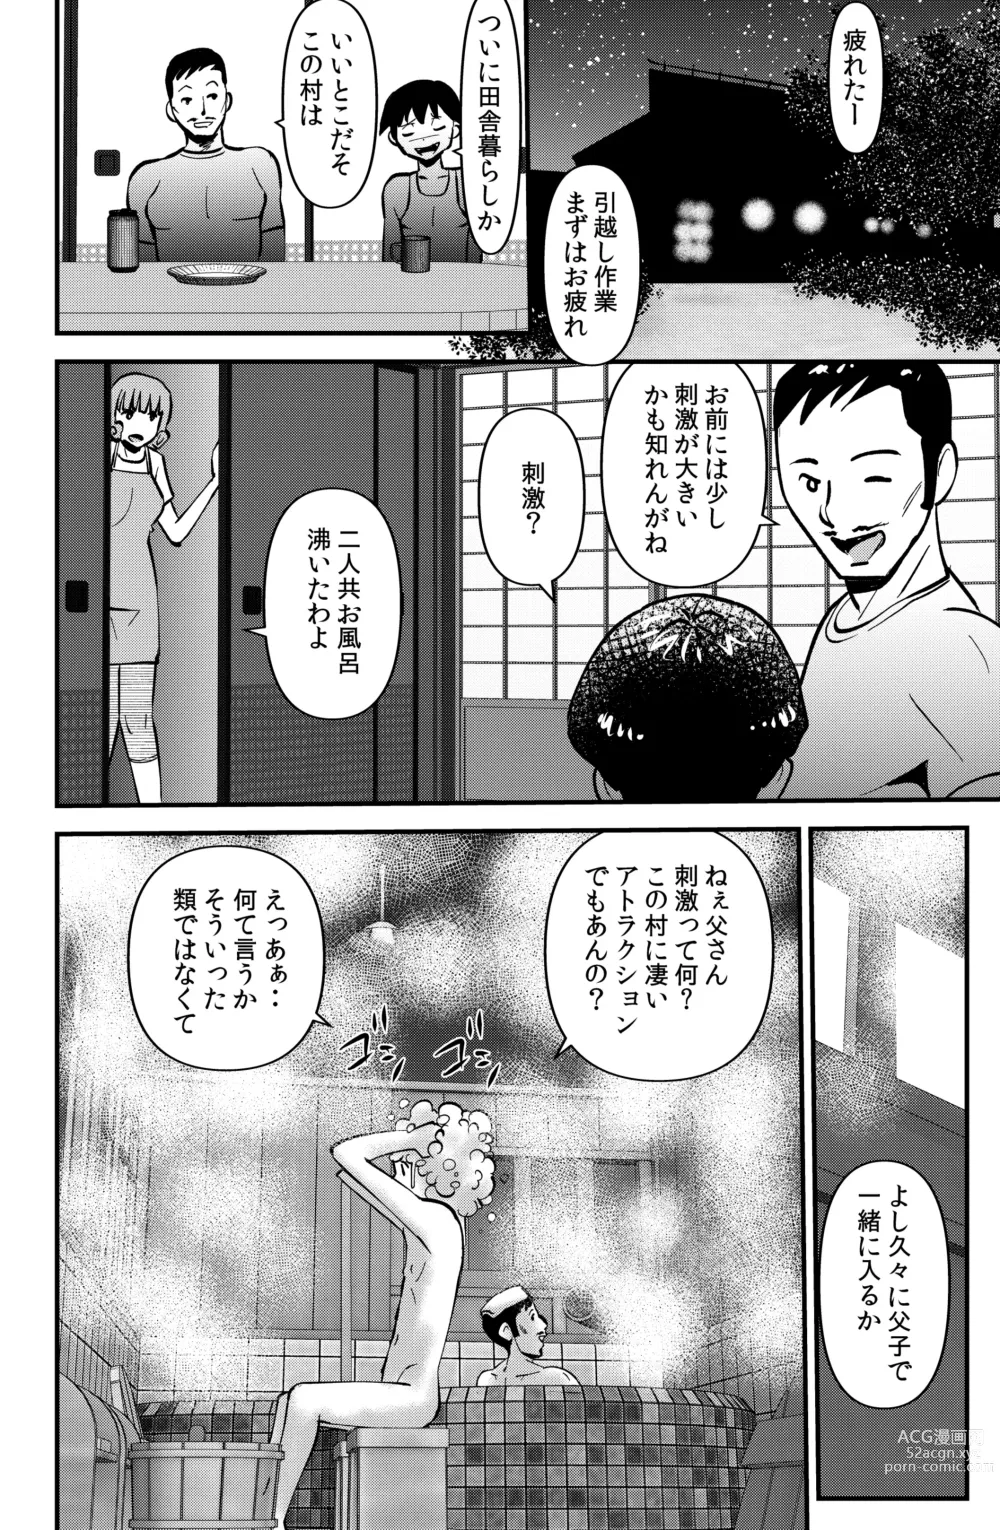 Page 4 of doujinshi Mura no Narawashi